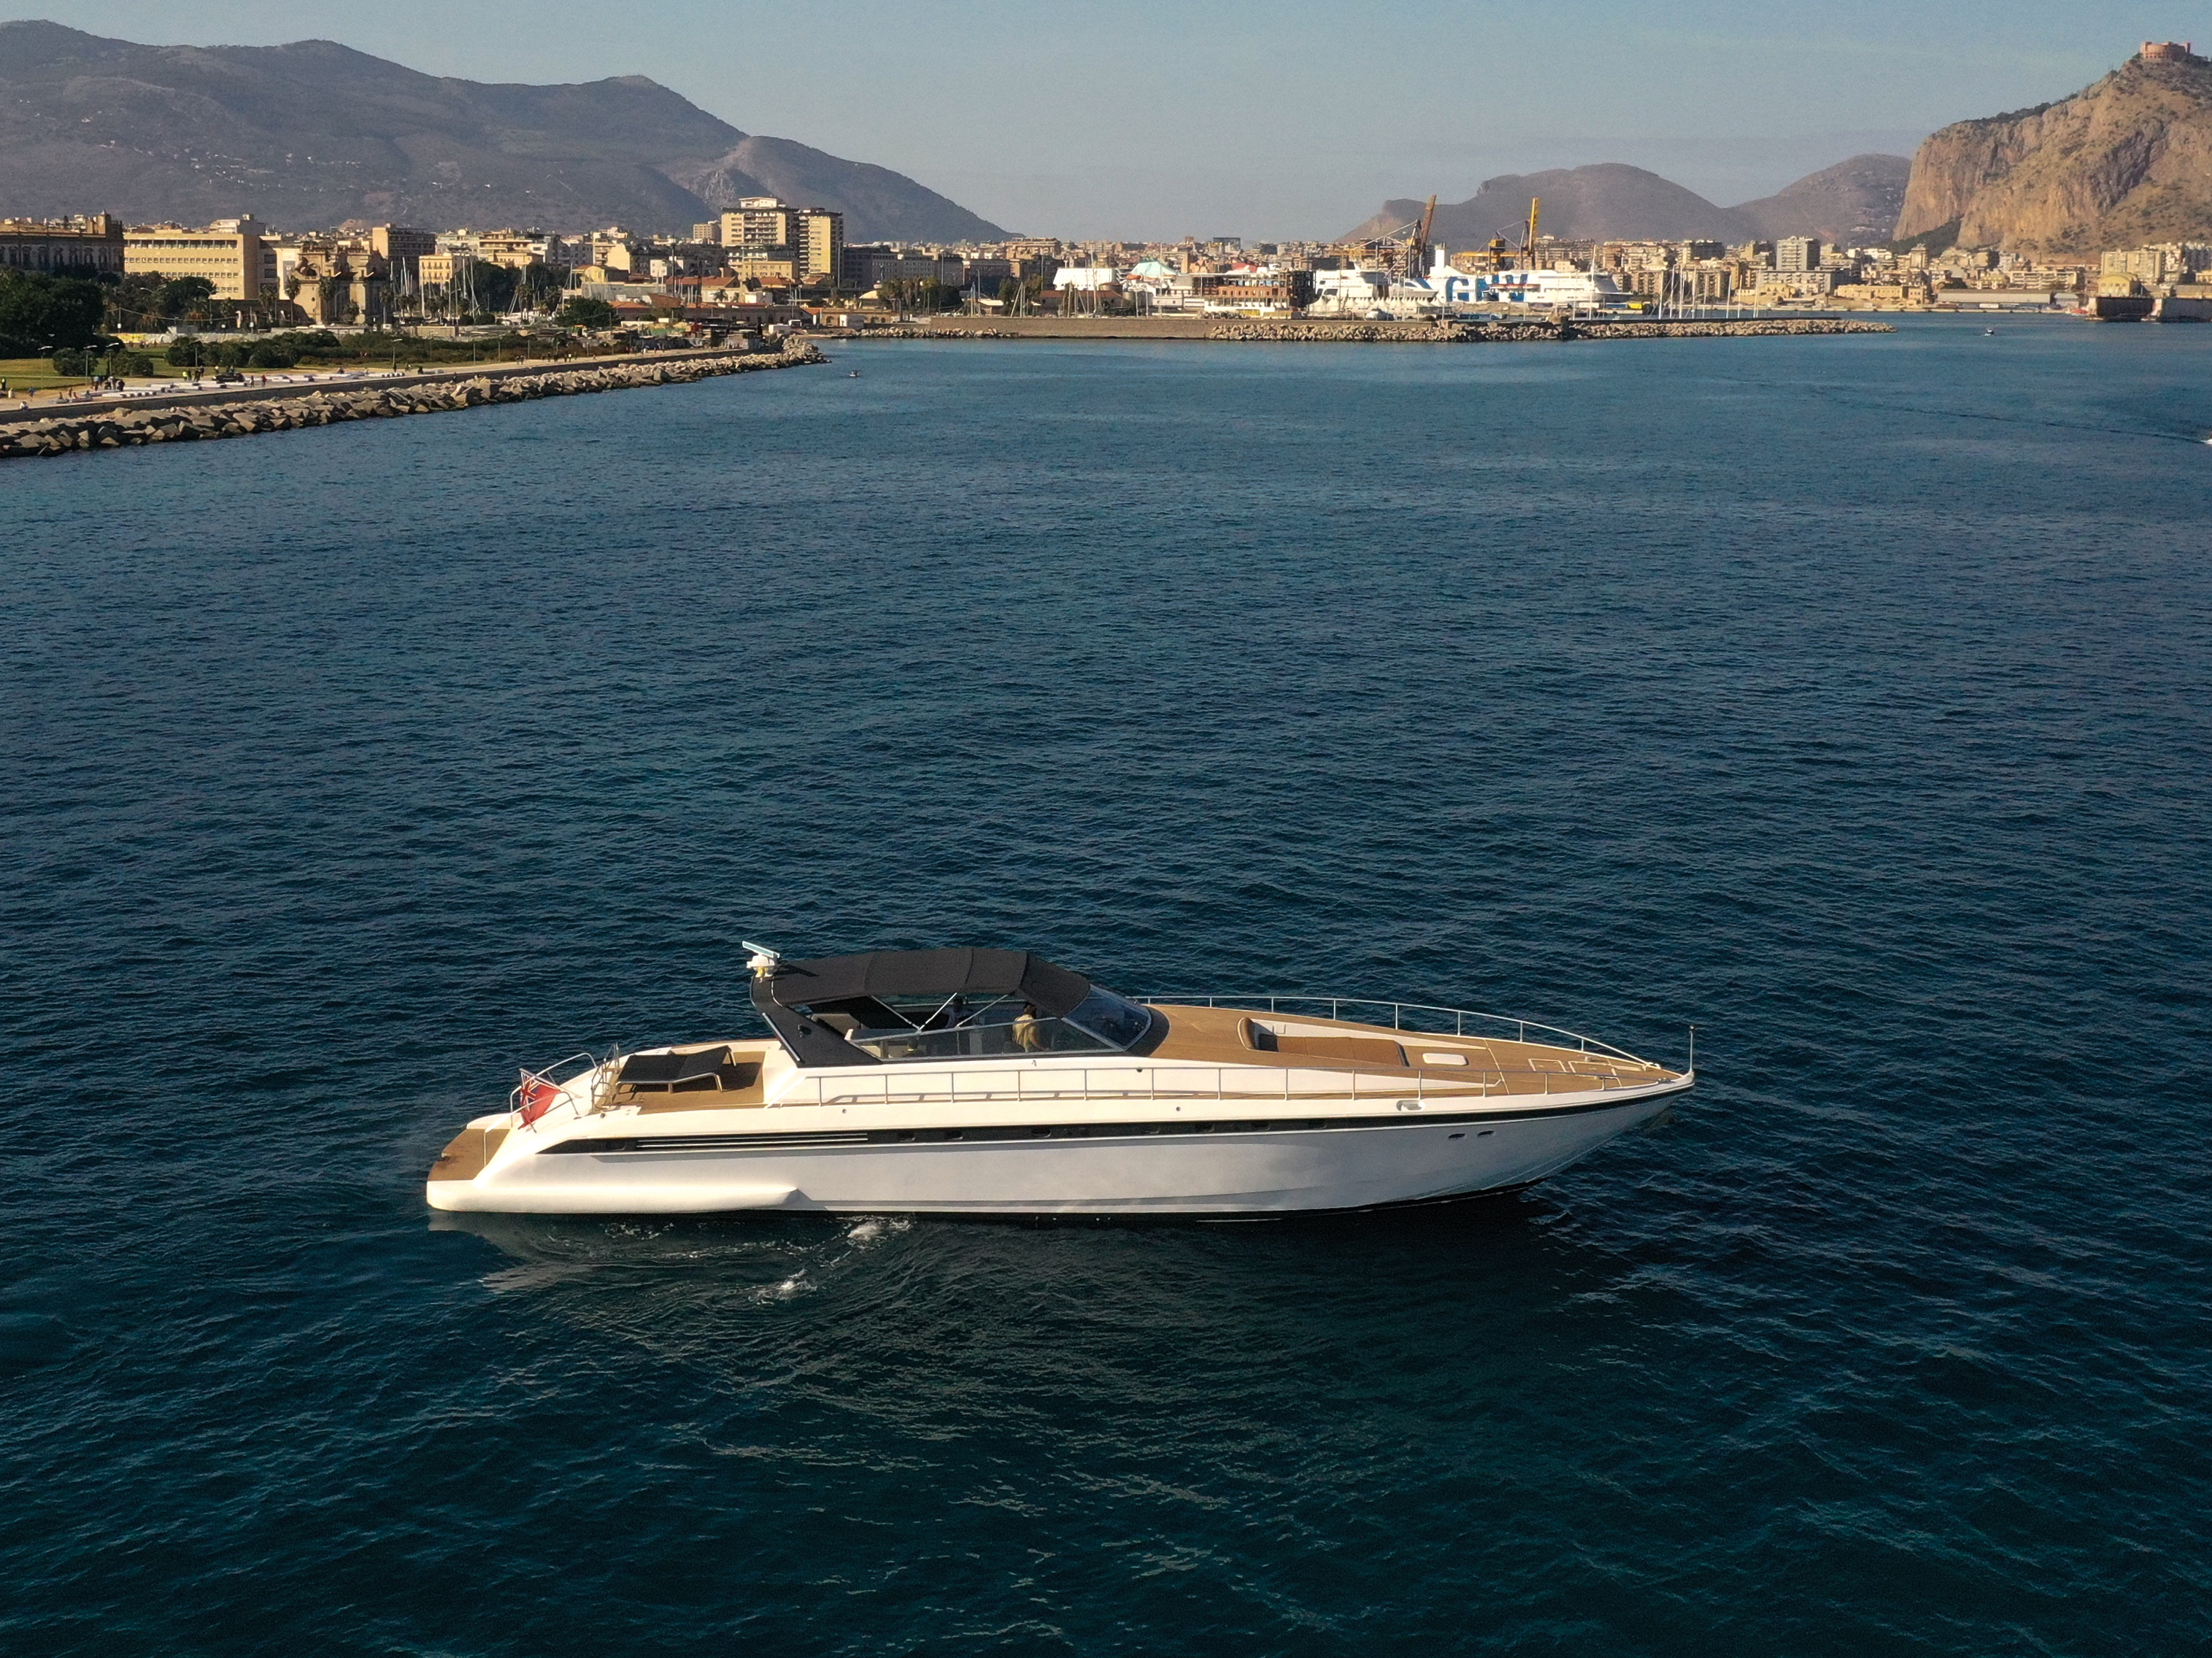 Leopard 23 - Motor Boat Charter Sicily & Boat hire in Italy Sicily Aeolian Islands Milazzo Marina Poseidon 2